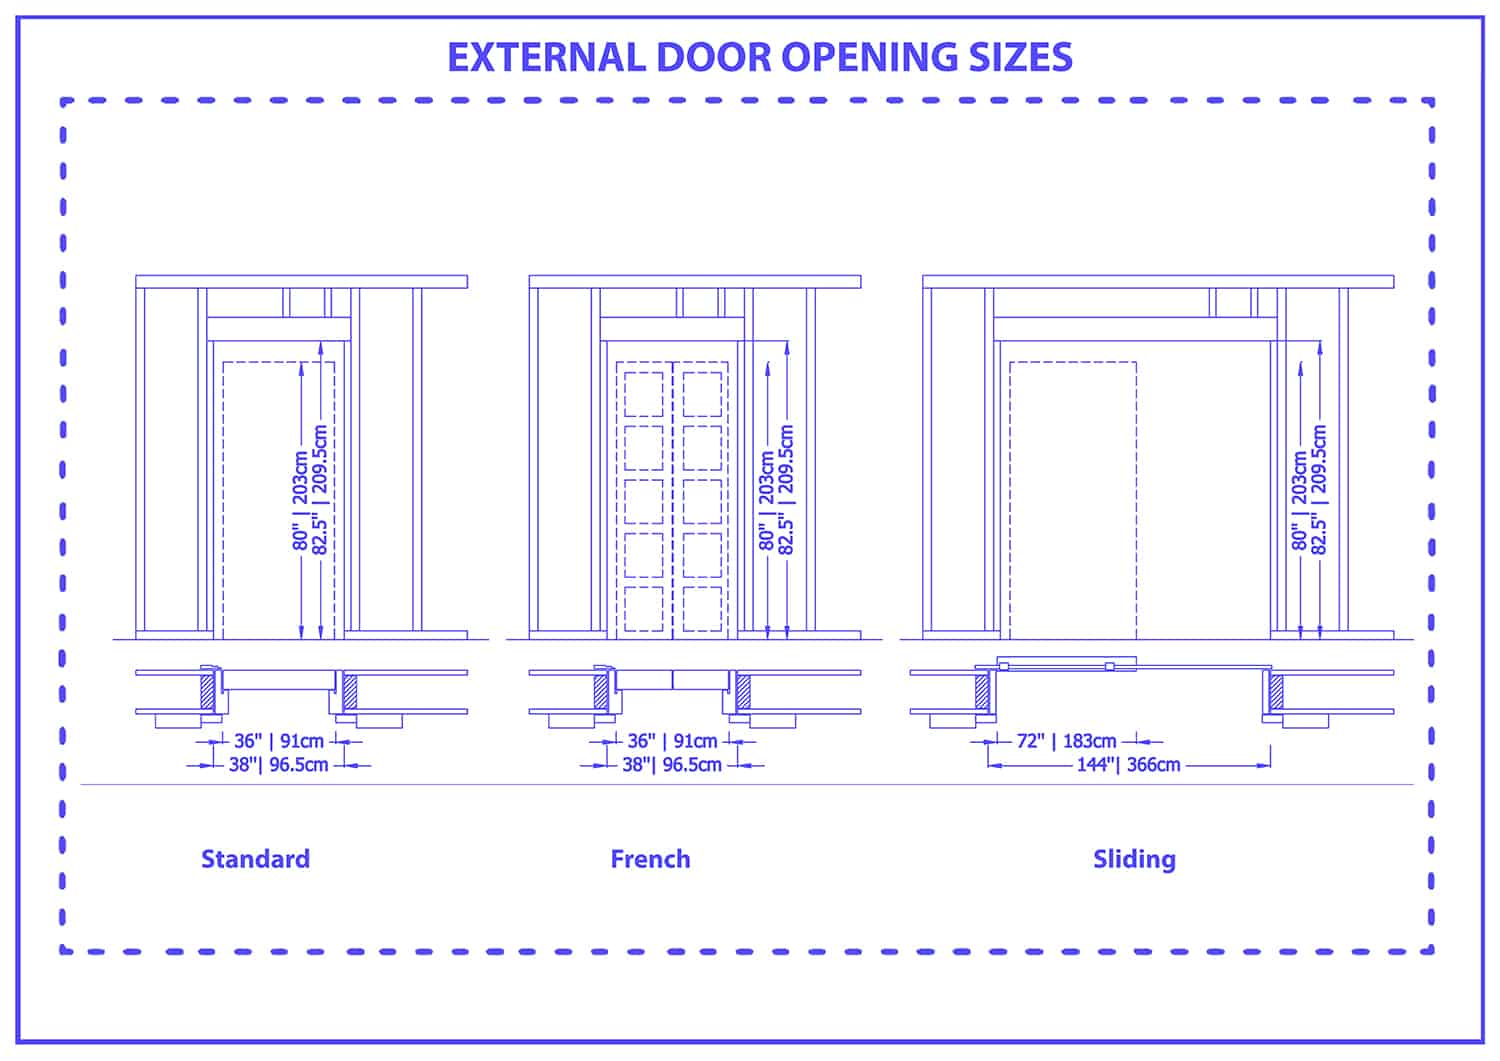 External door opening sizes